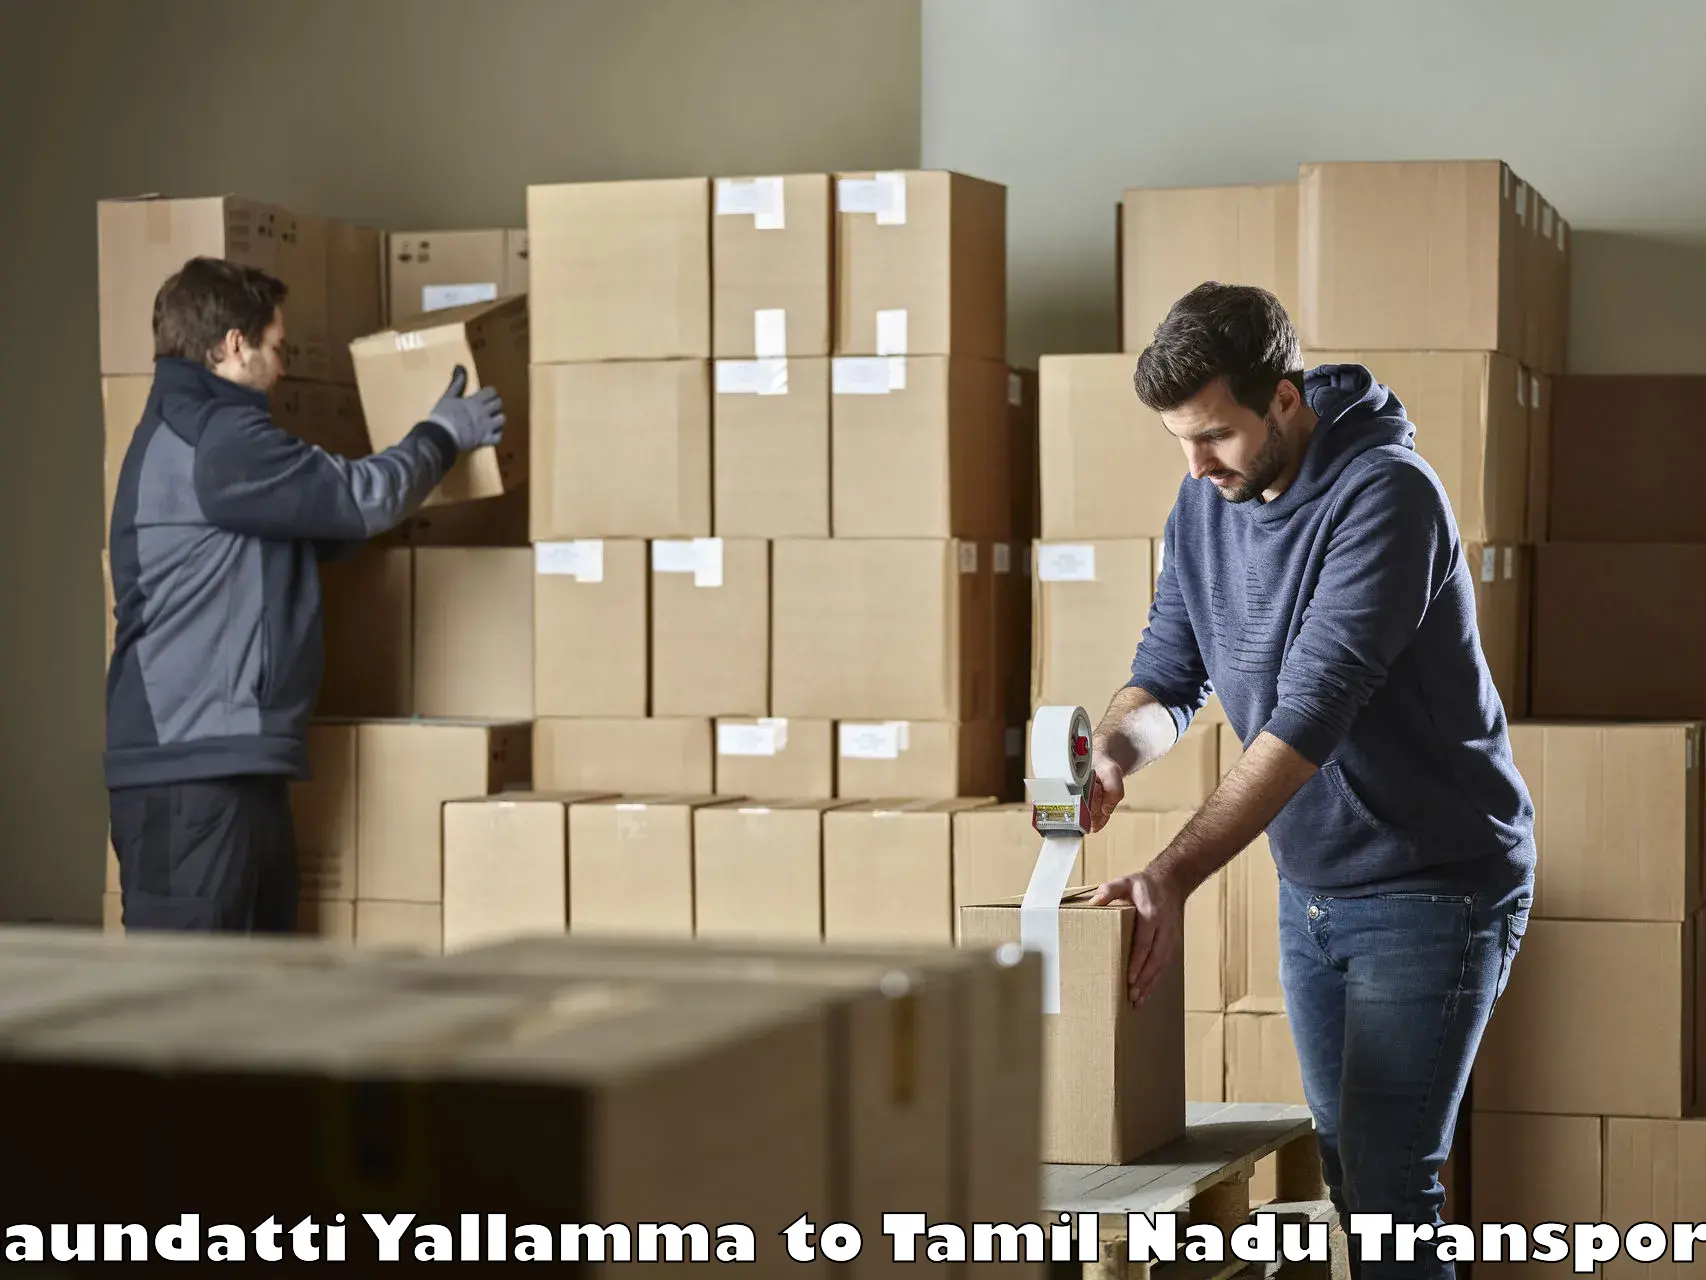 Shipping services Saundatti Yallamma to Cheyyar